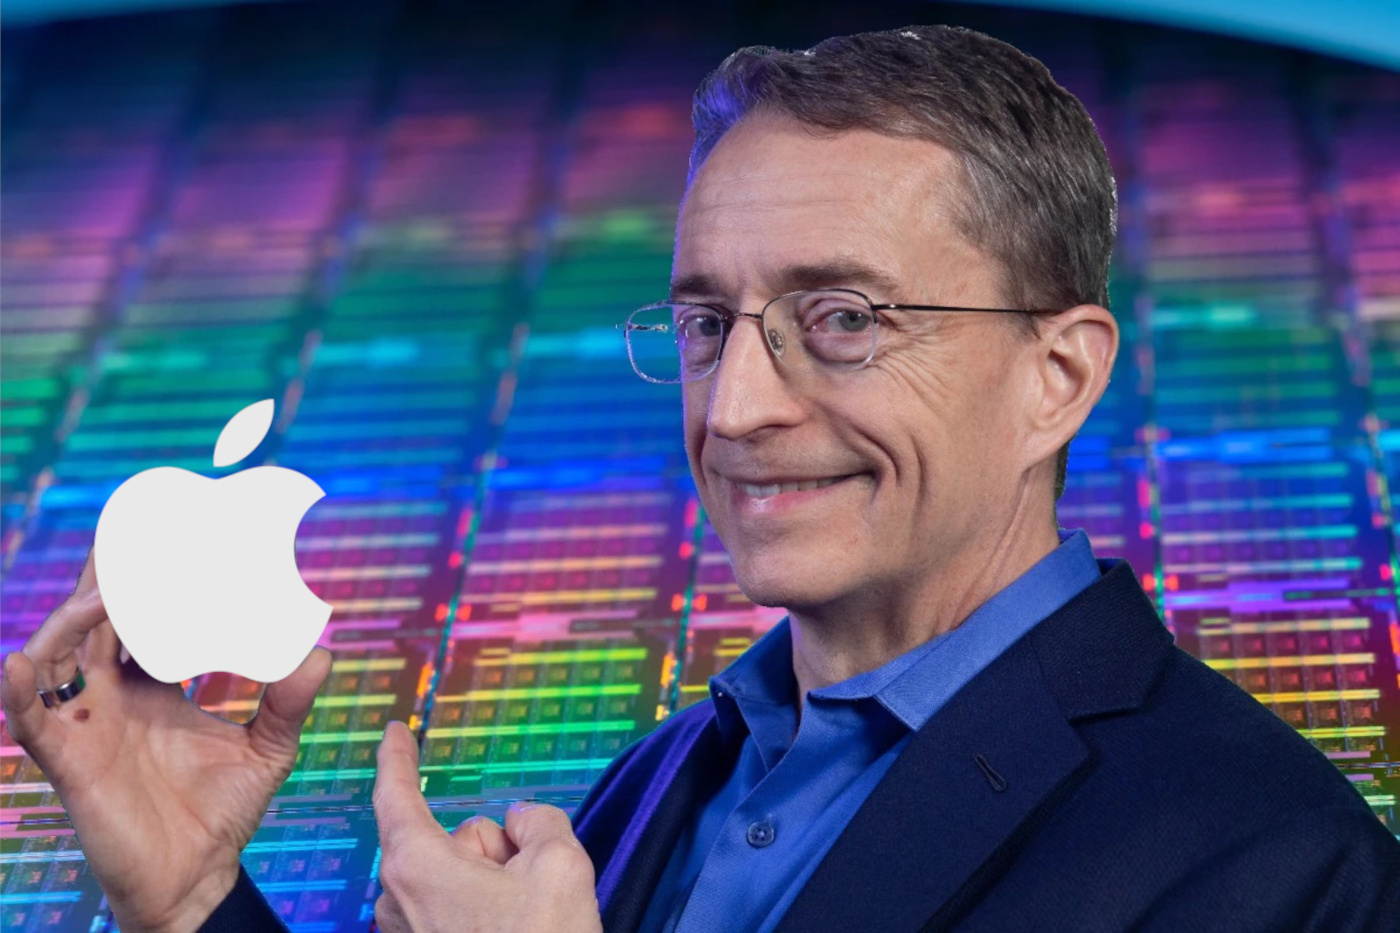 Az év kezdetén az Intel máris nagyot harapott az almából.